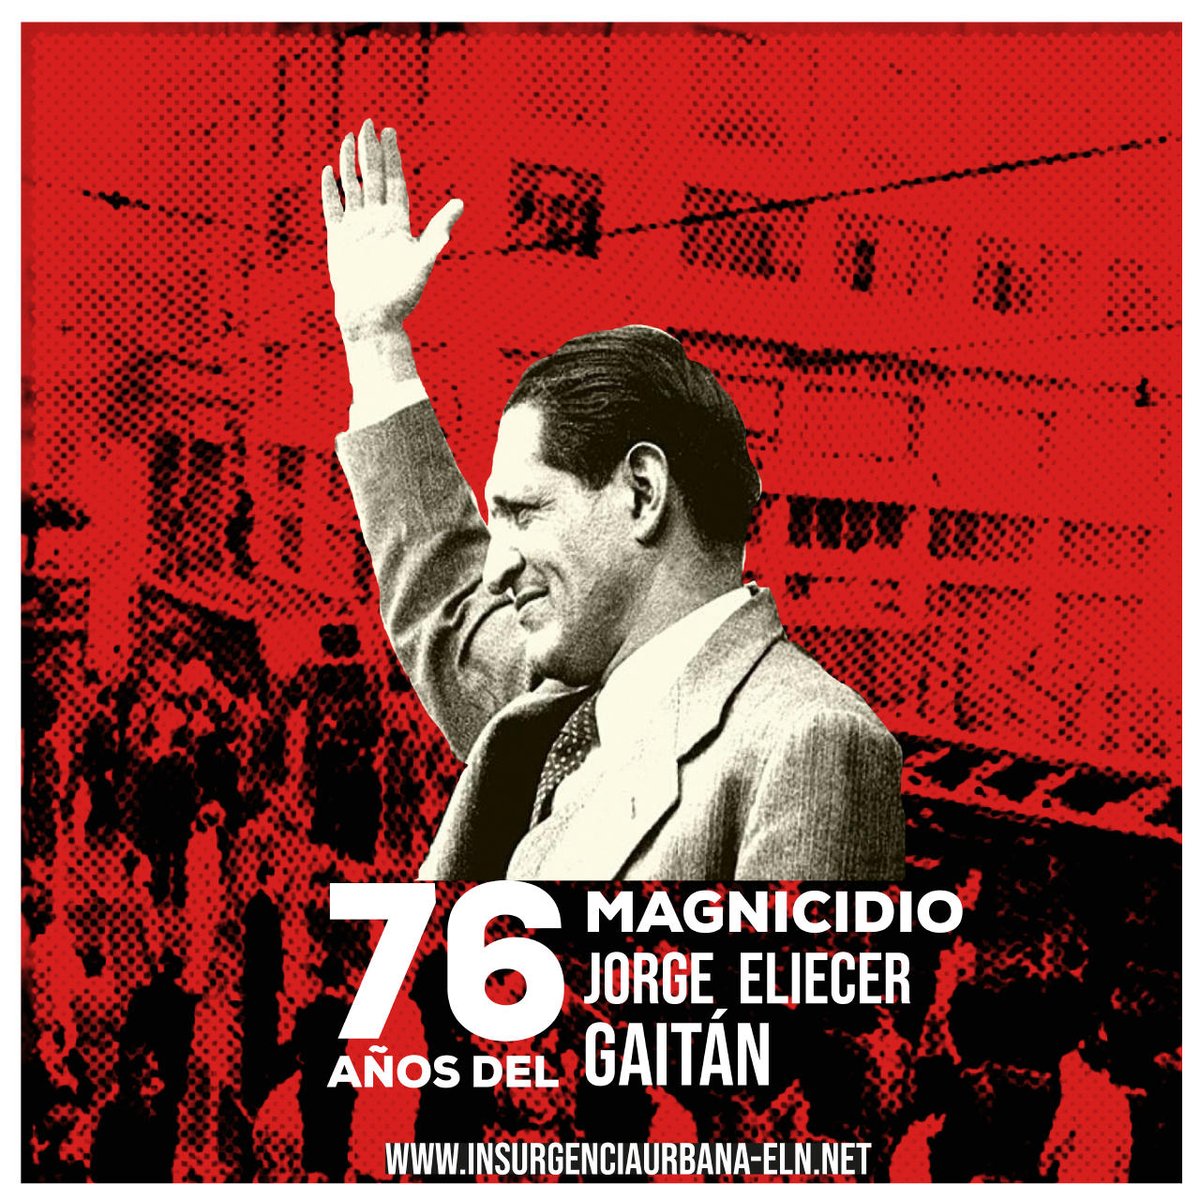 #Gaitán | #Memoria | #Efemérides

#Gaitán | #Memoria | #Efemérides

Jorge Eliécer Gaitán (23 de enero de 1903 - 9 de abril de 1948)

#ELN60años #SiempreJuntoAlPueblo #InsurgenciaUrbana #Bogotazo